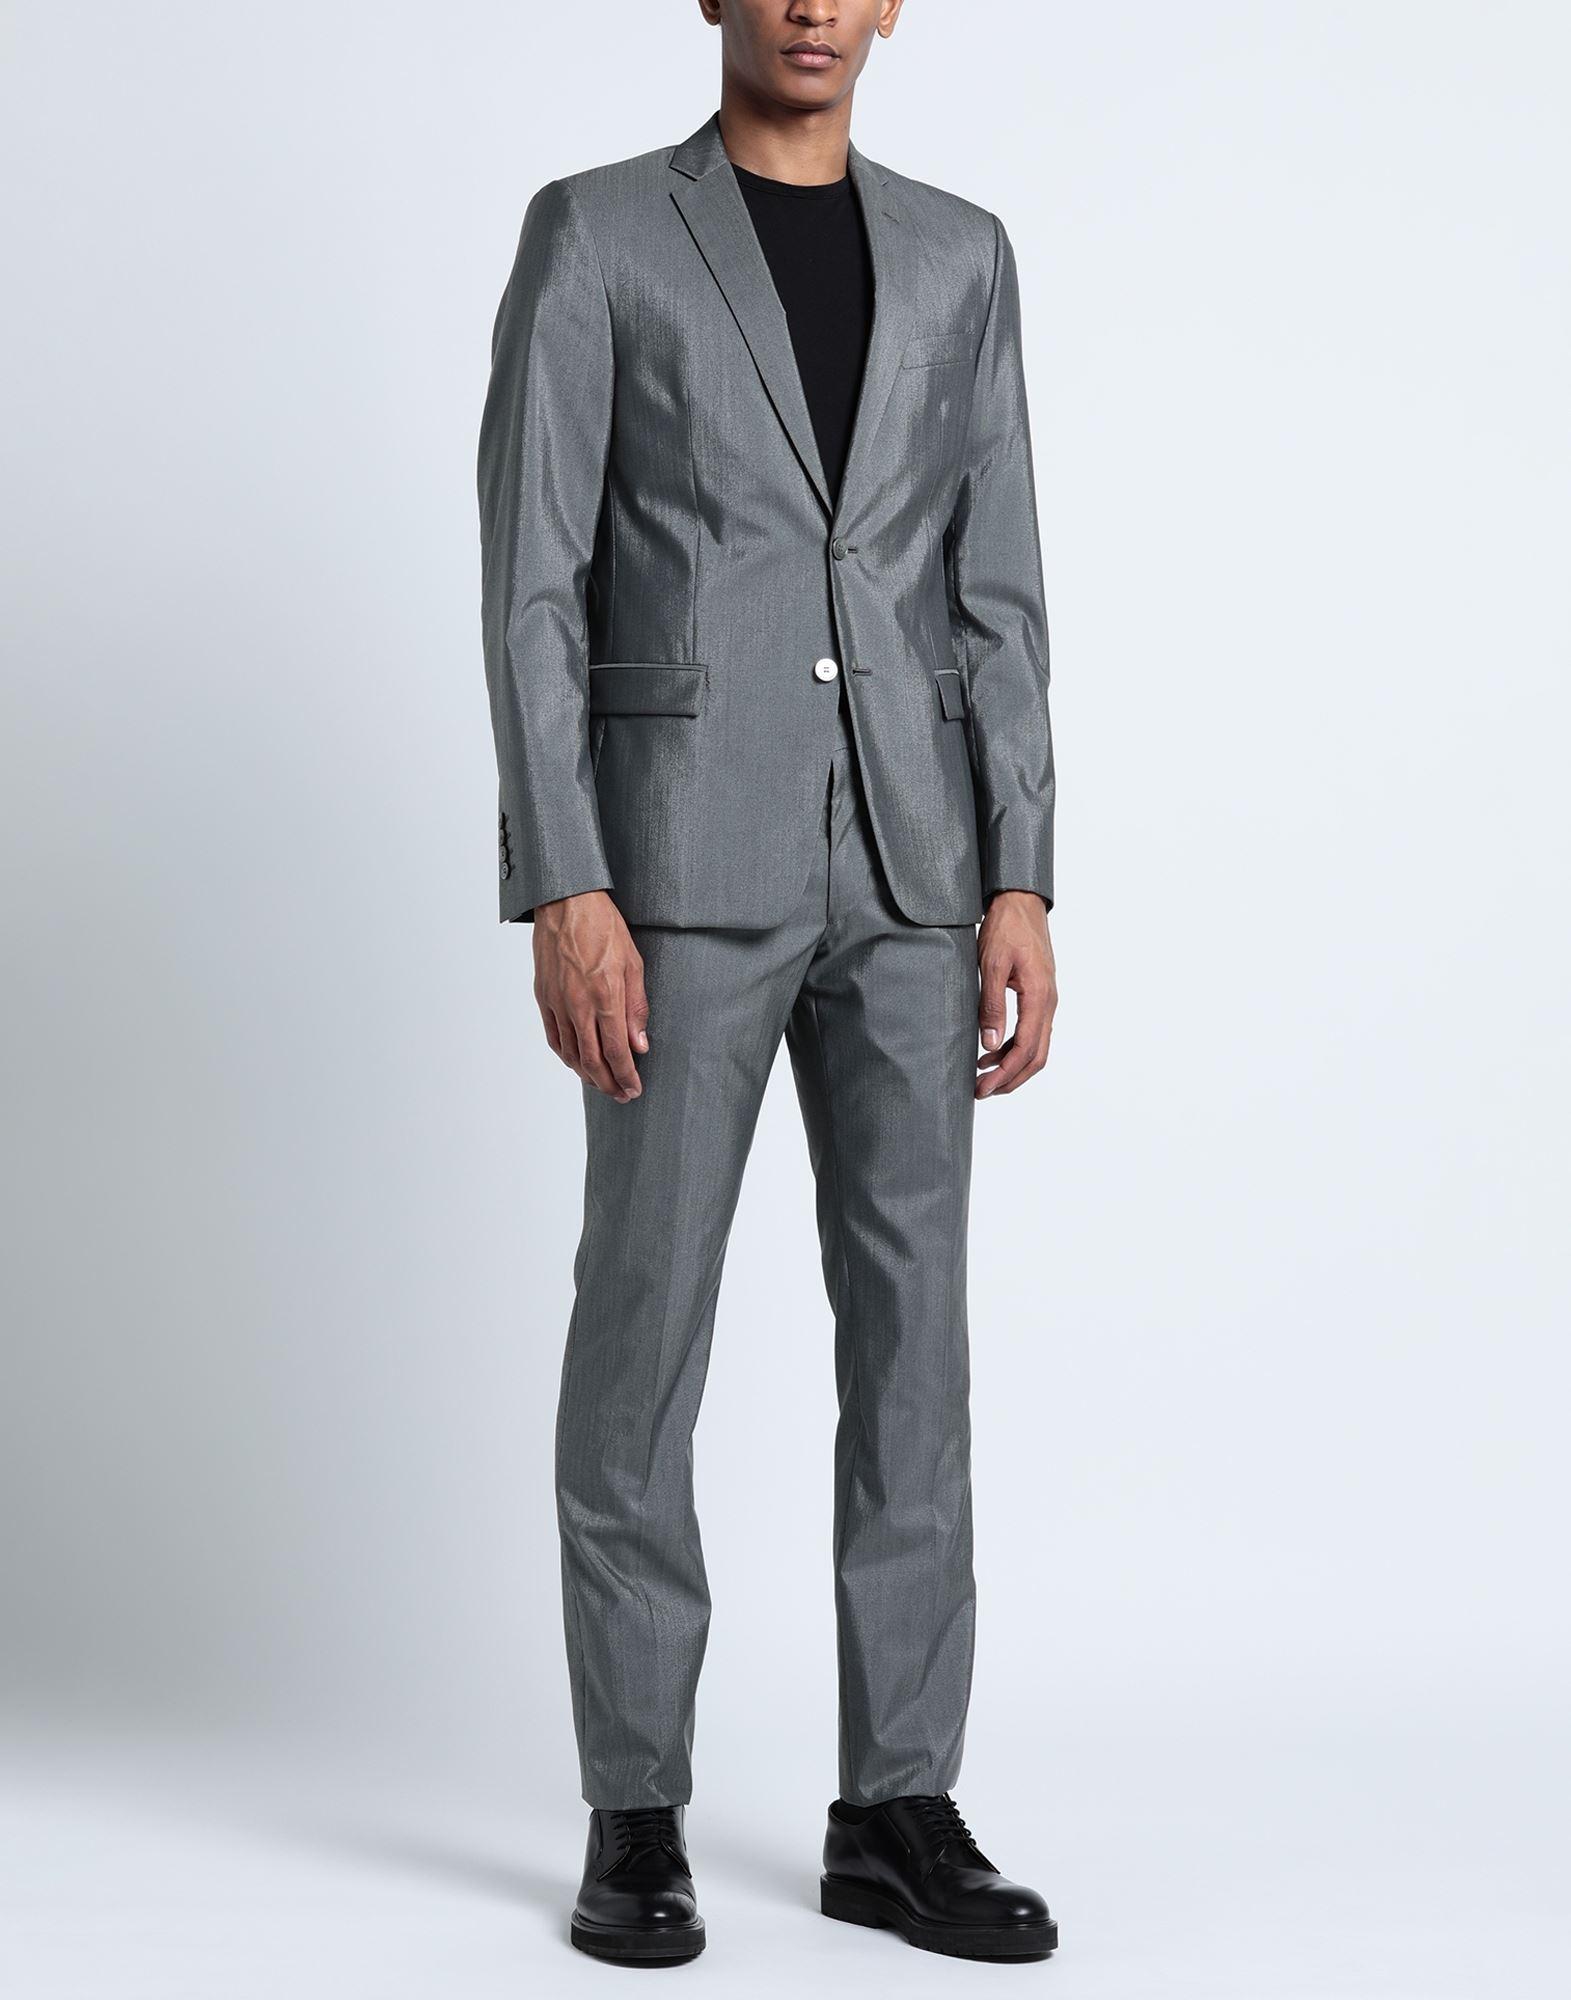 I peaked! Versace men's suit jacket : r/ThriftStoreHauls